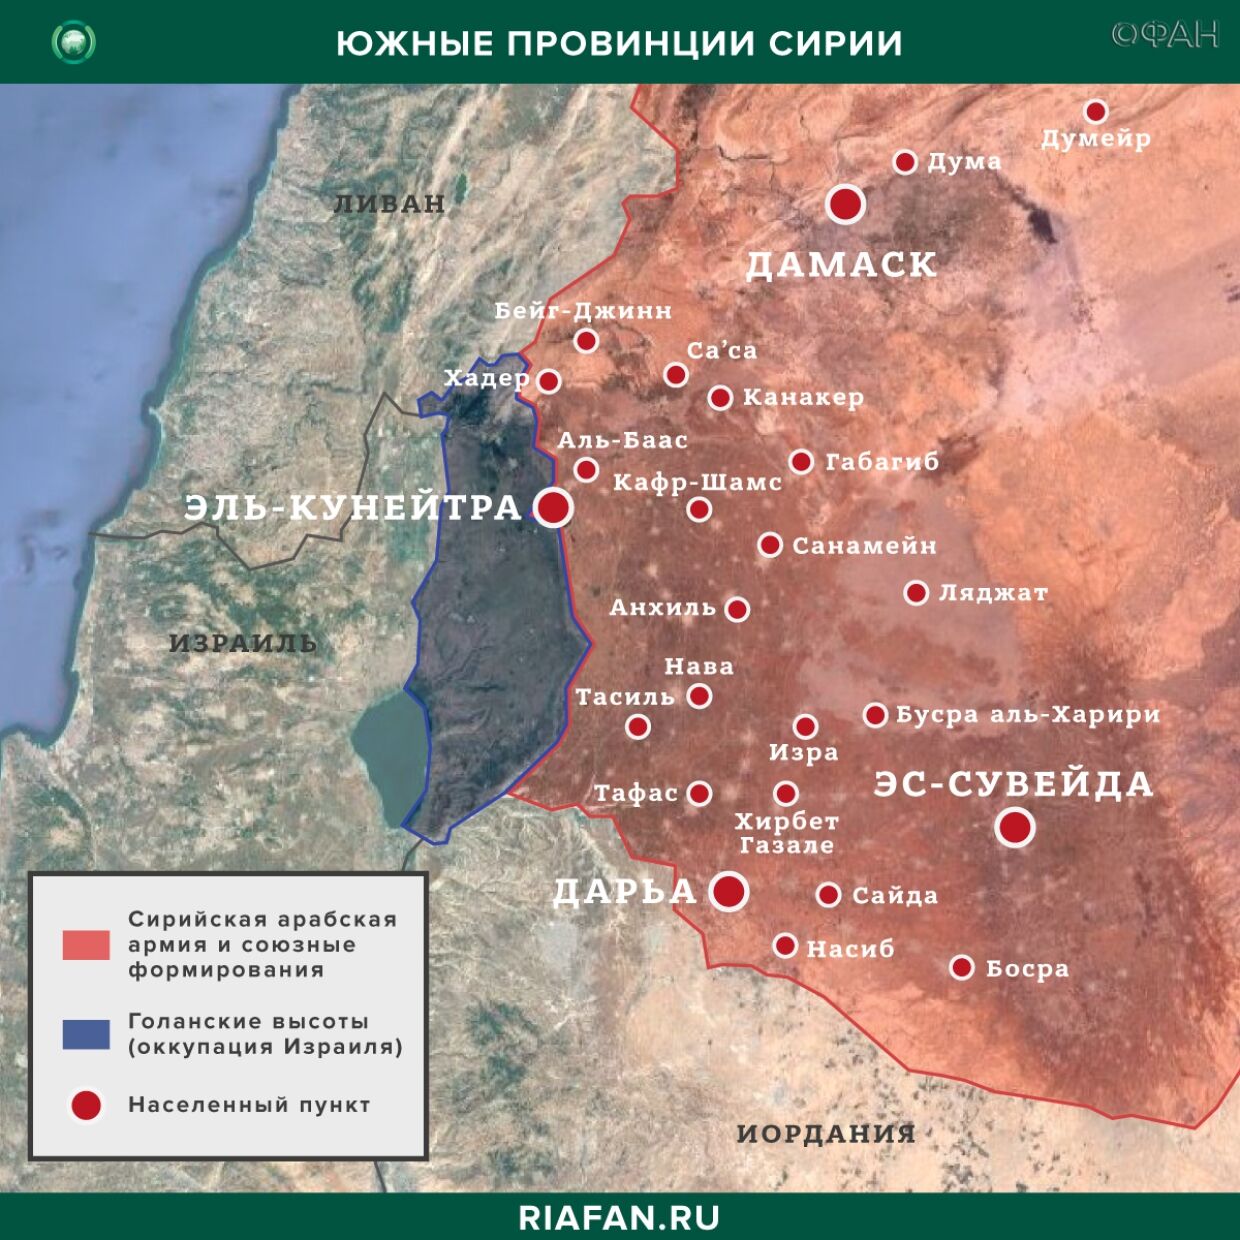 Nouvelles de Syrie 30 Mars 22.30: нападение боевиков в Даръа, ХТШ устраняет идейных противников в Идлибе